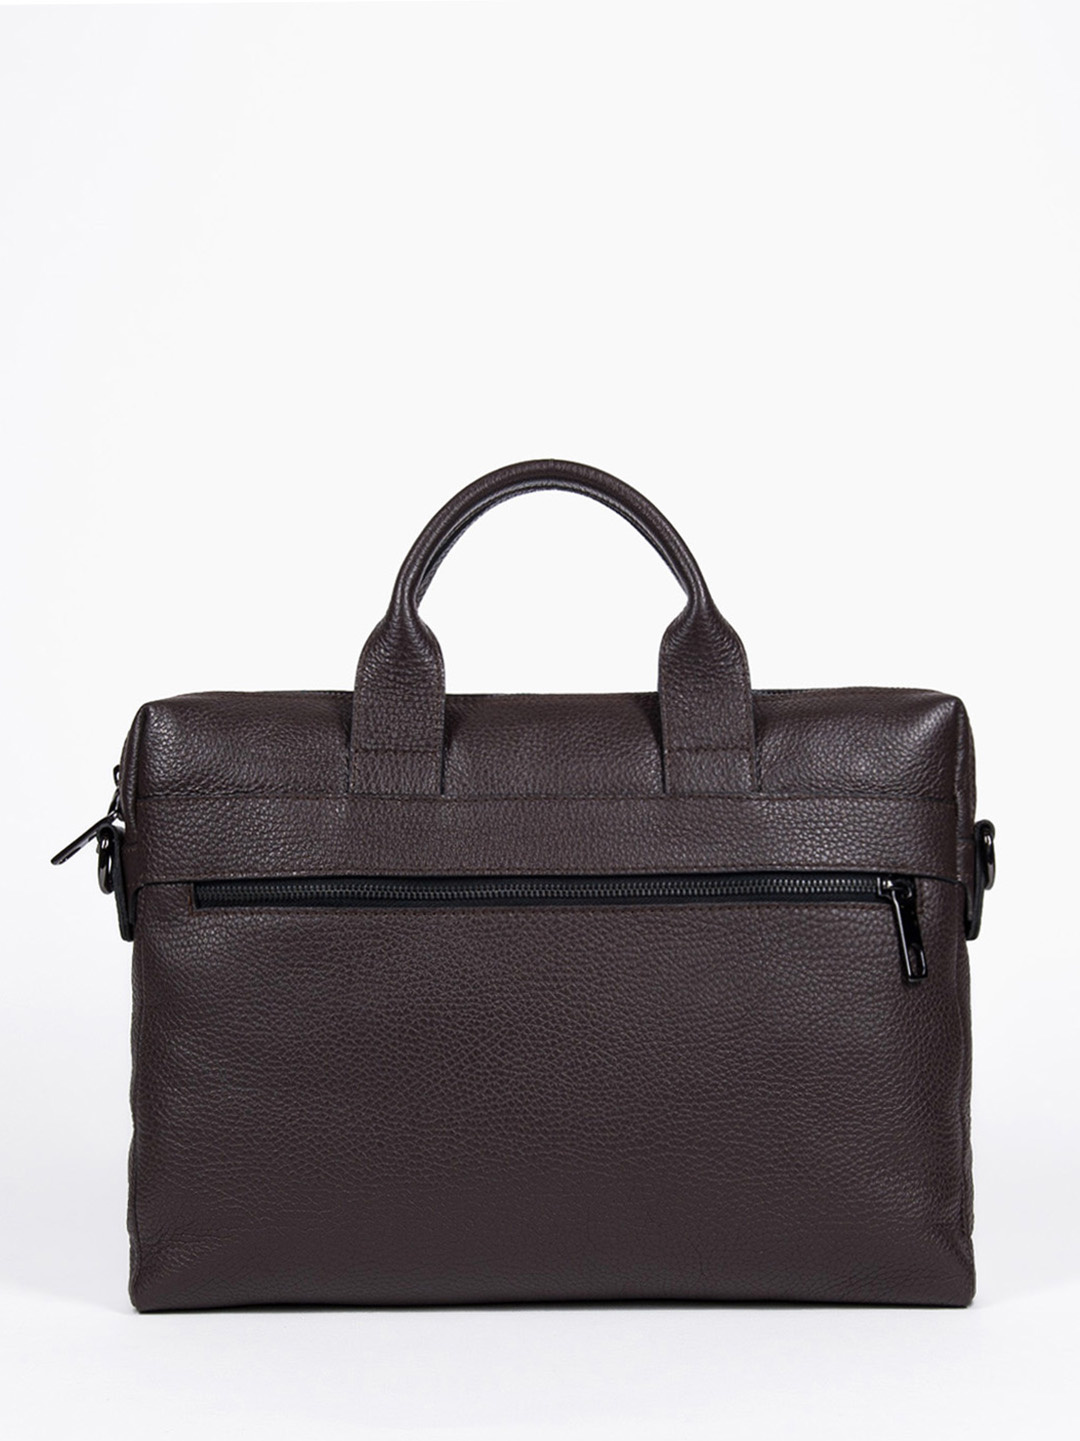 Фото Деловая сумка из зернистой кожи коричневого цвета Деловые сумки (А4)